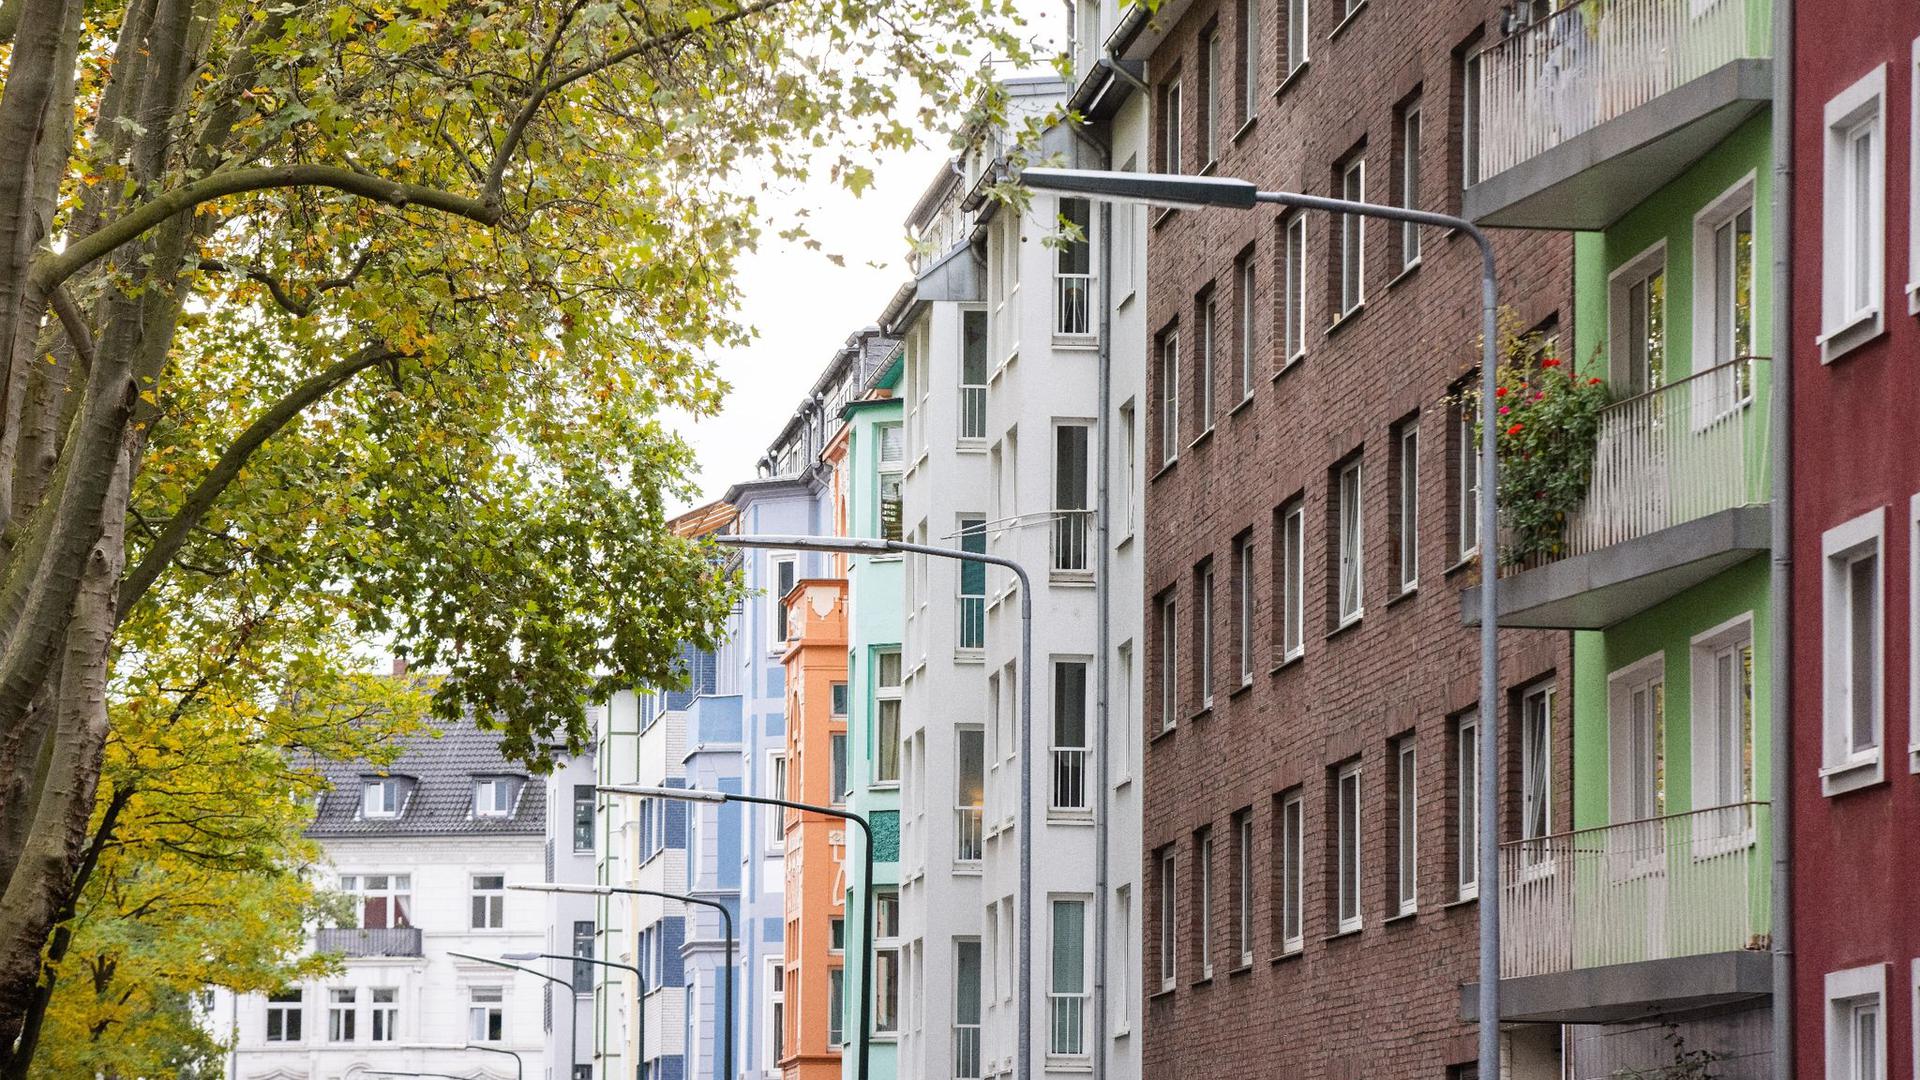 Blick in eine Straße mit Wohnhäusern in Düsseldorf. Der Trend zu überhöhten Immobilienpreisen vor allem in deutschen Großstädten hat sich einer Bundesbank-Analyse zufolge im Jahr 2020 leicht verschärft.